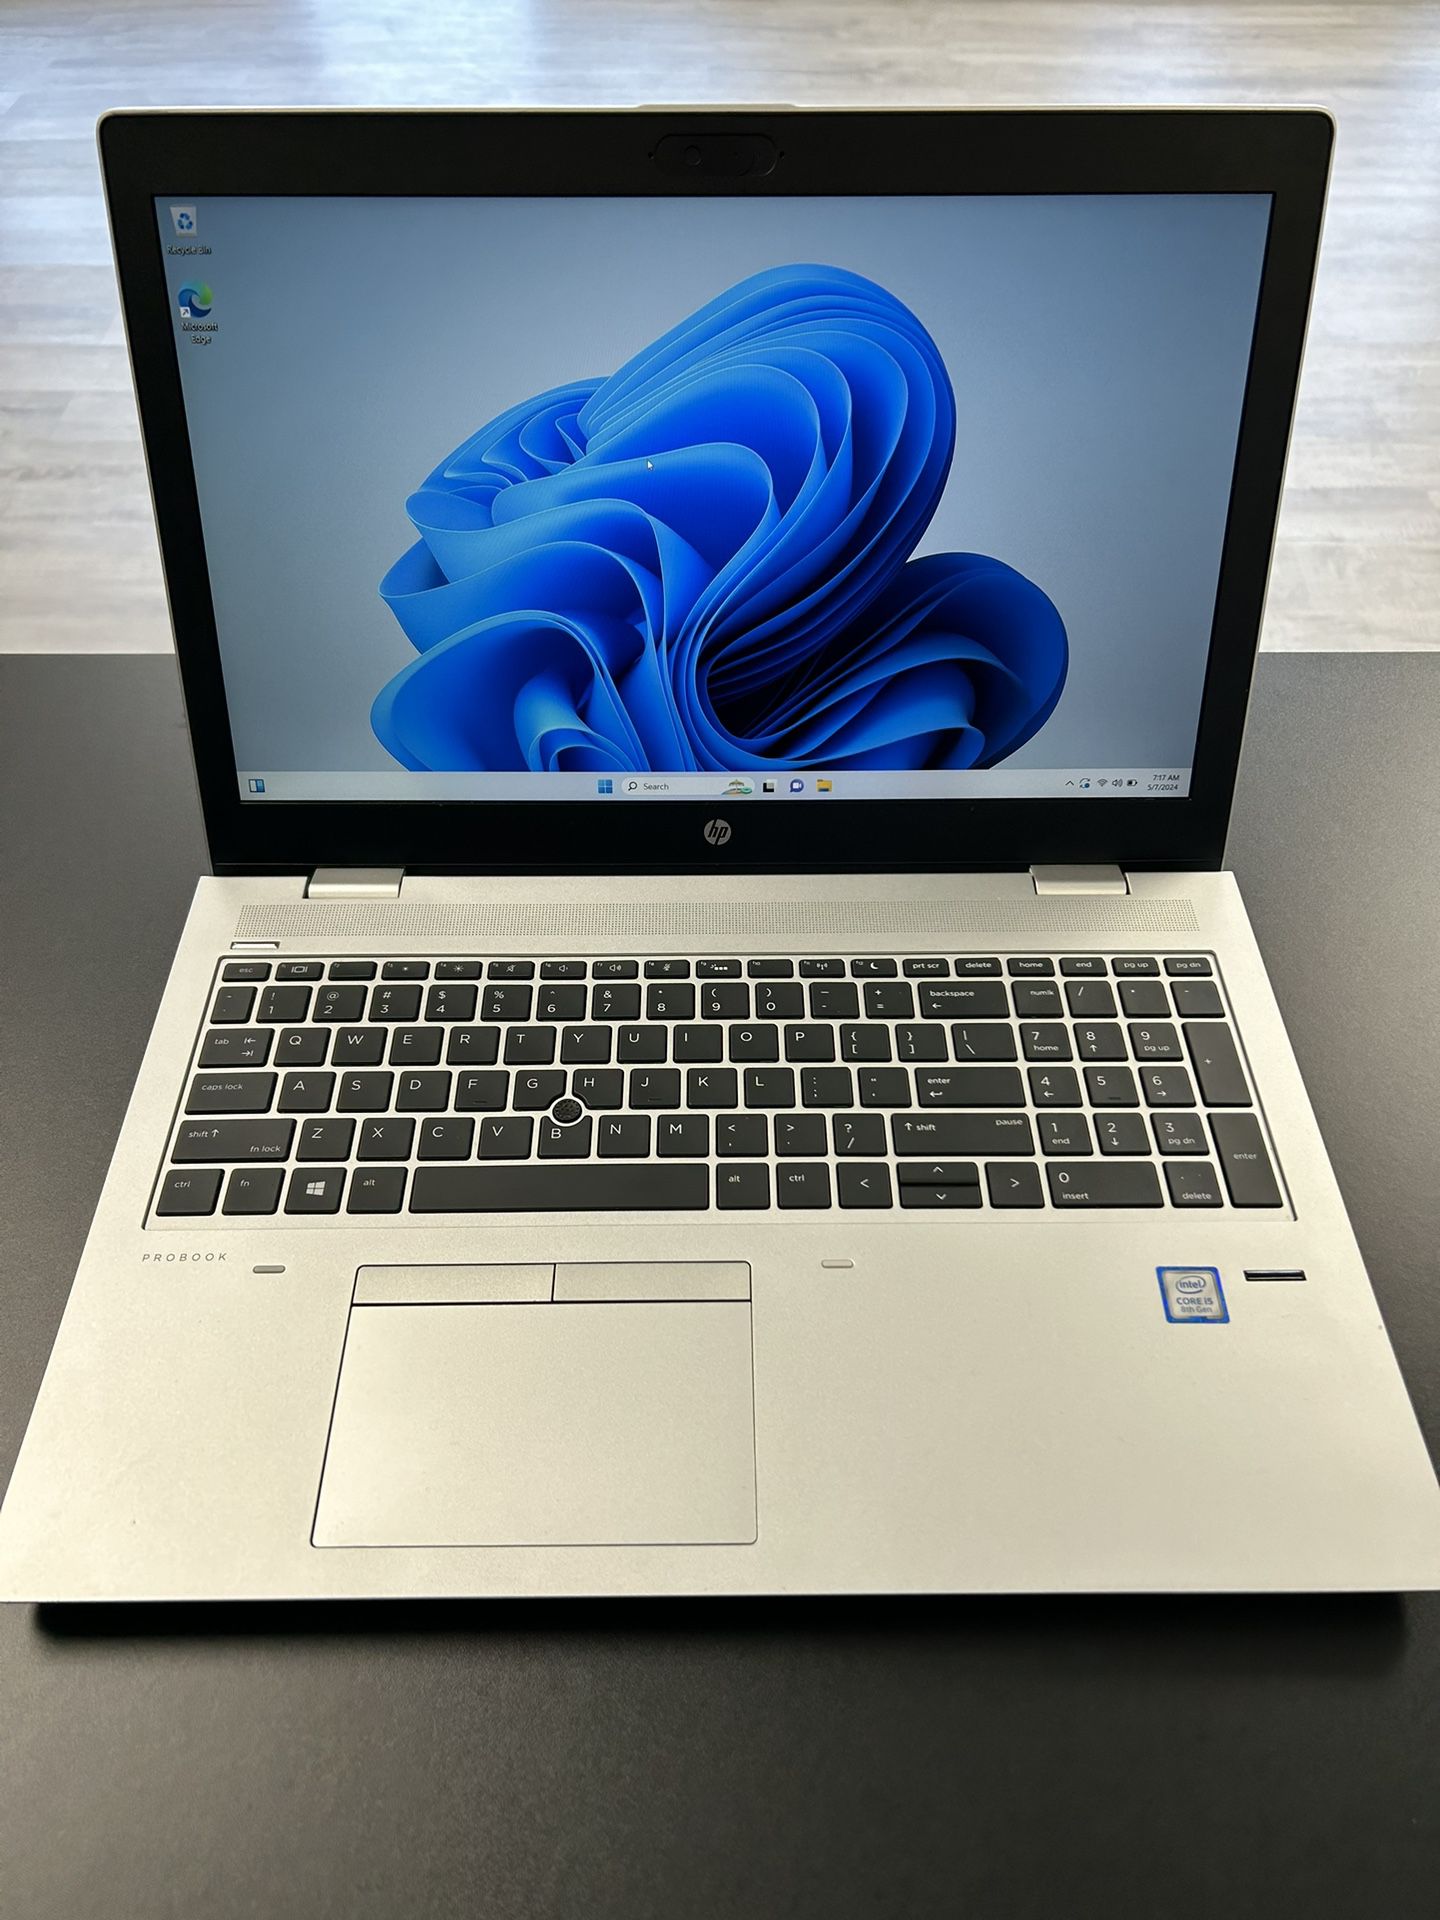 !! COMPUTER DEPOT !! HP Probook 650 G4 Laptop